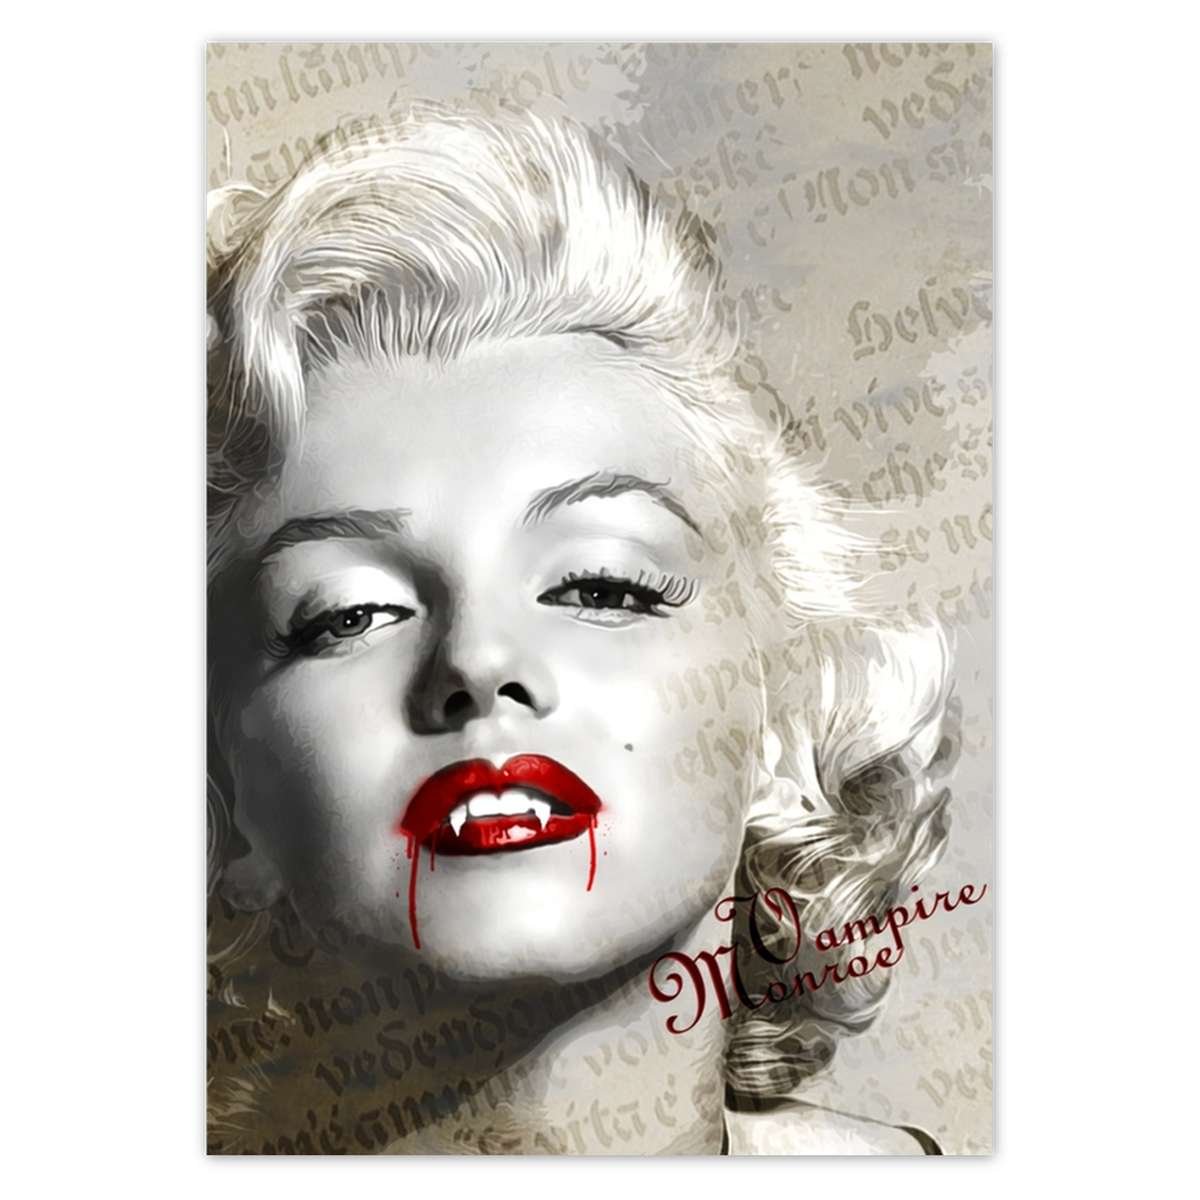 Plakat A4 Pion Wampire Marilyn Monroe Zesmakiem Sklep Empikcom 0903